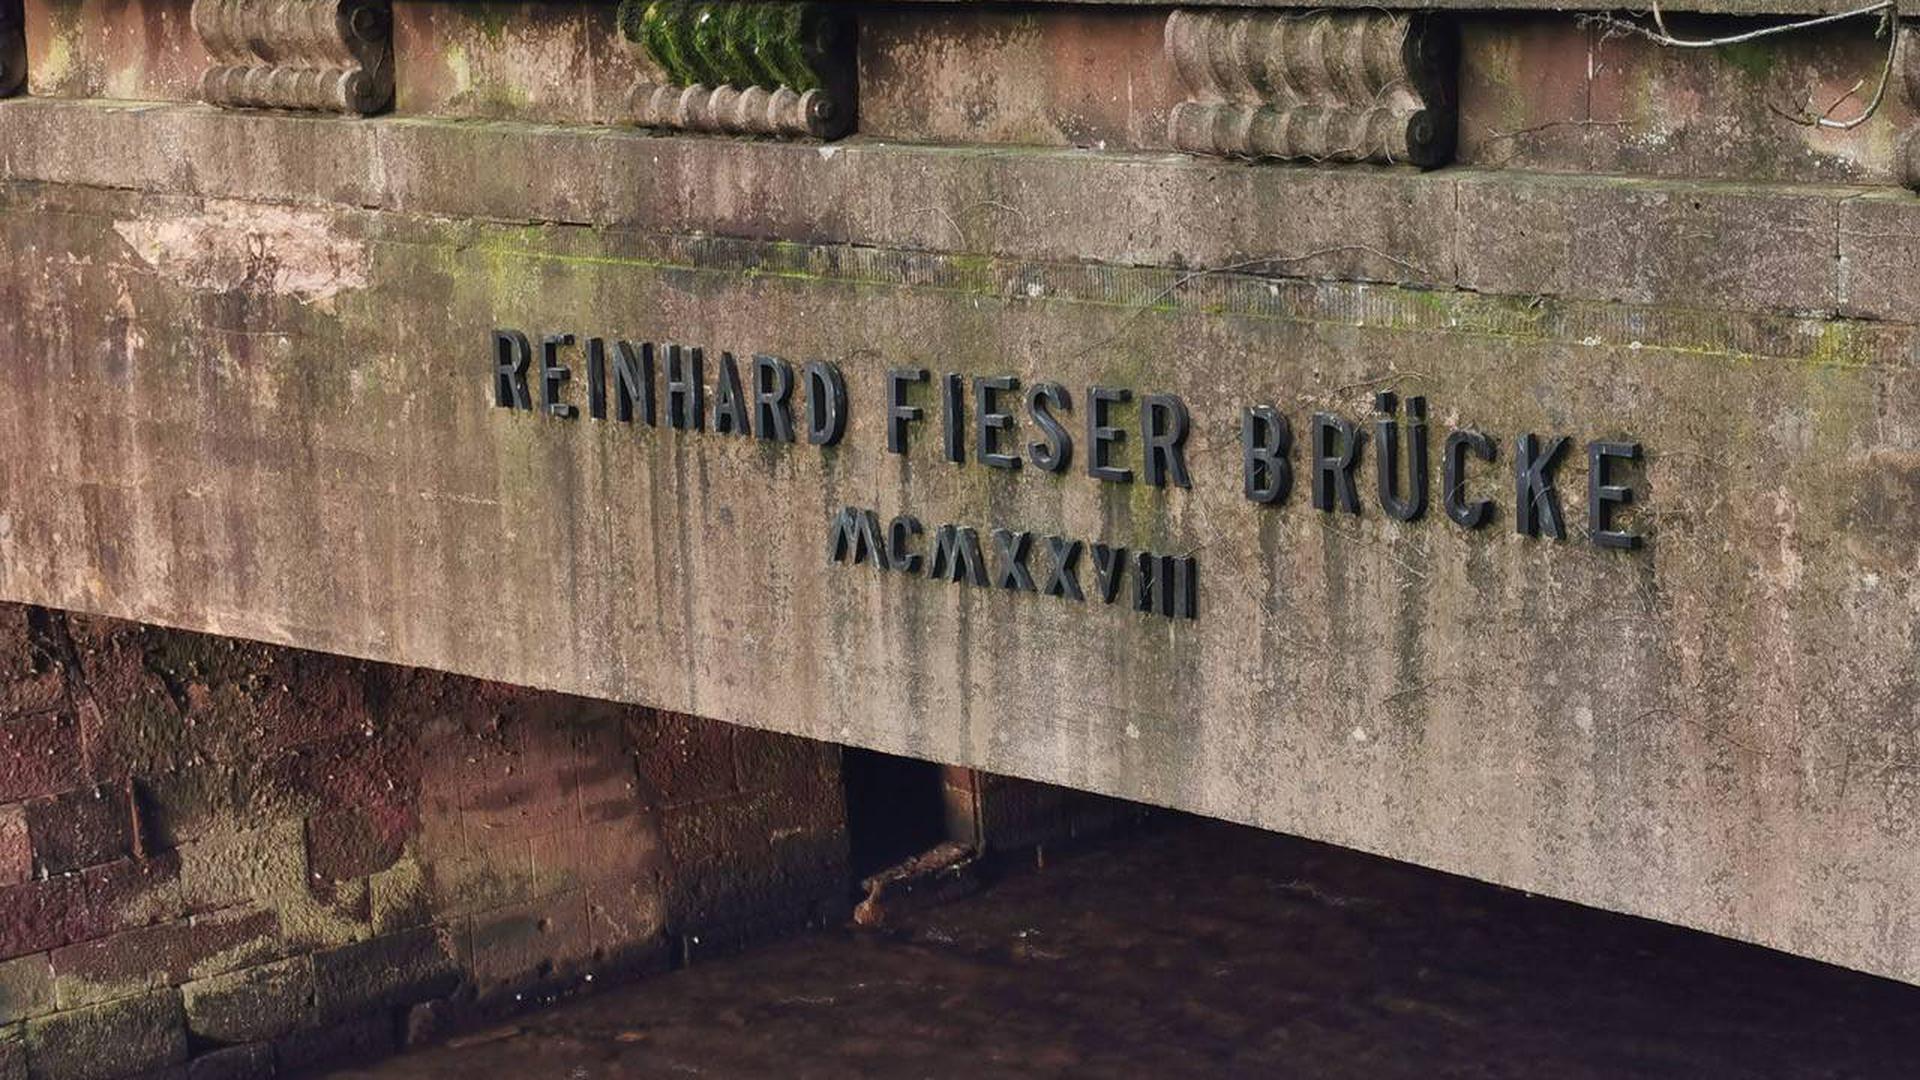 Fieserbrücke, Fieser-Brücke Baden-Baden